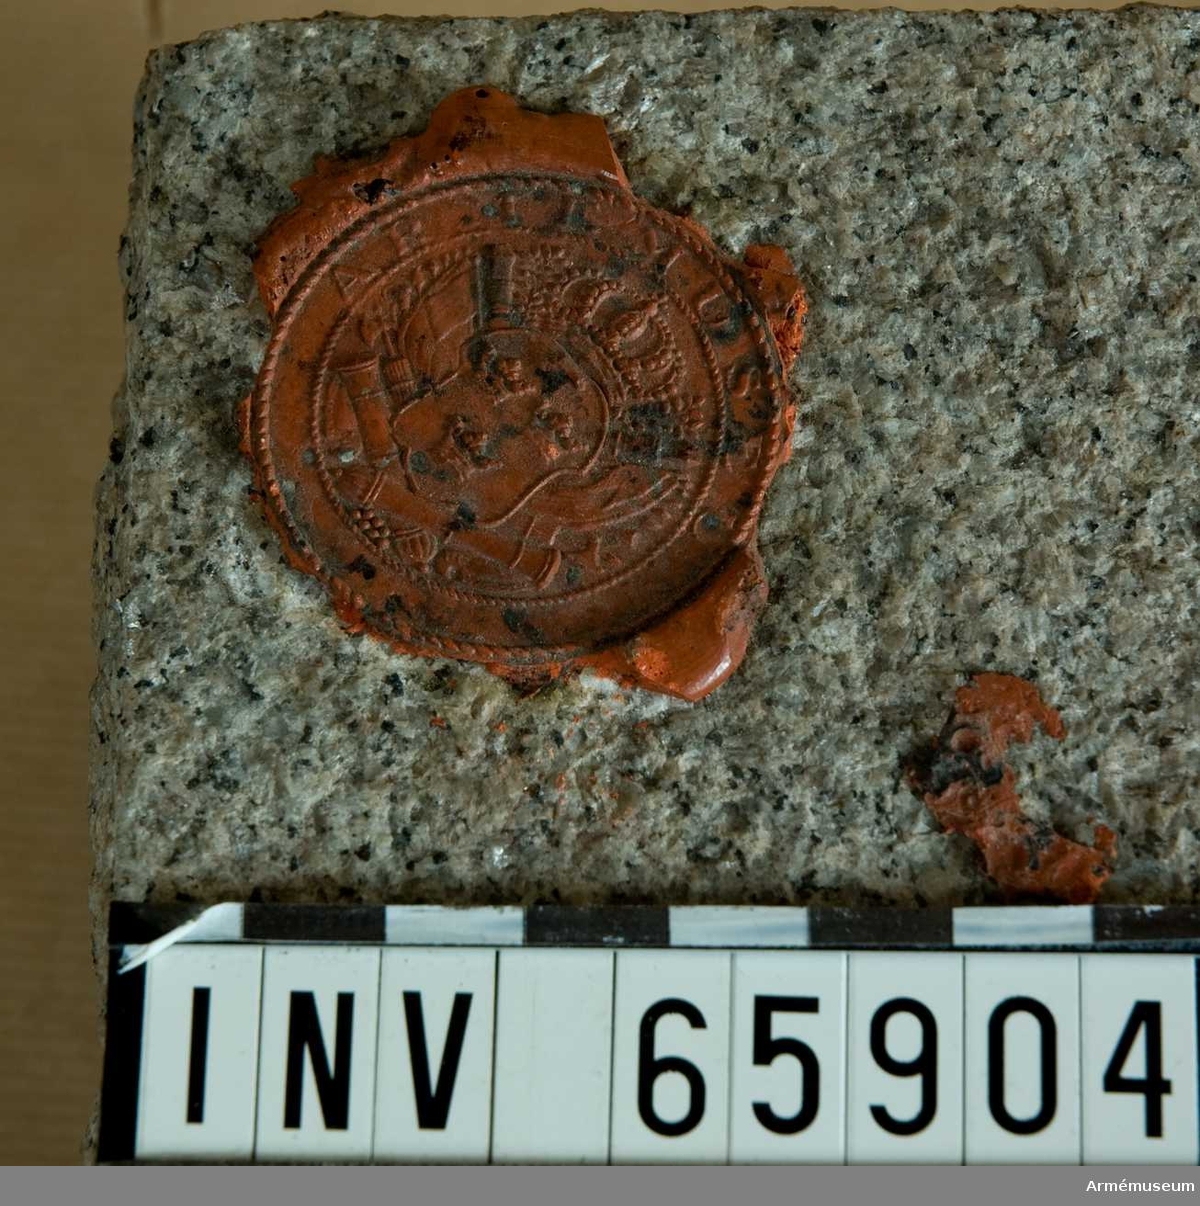 Grupp M I. Prov på Skalebergsgranit som använts för Narvamonumentet. Försedd med Armémuseums sigill i röd lack.